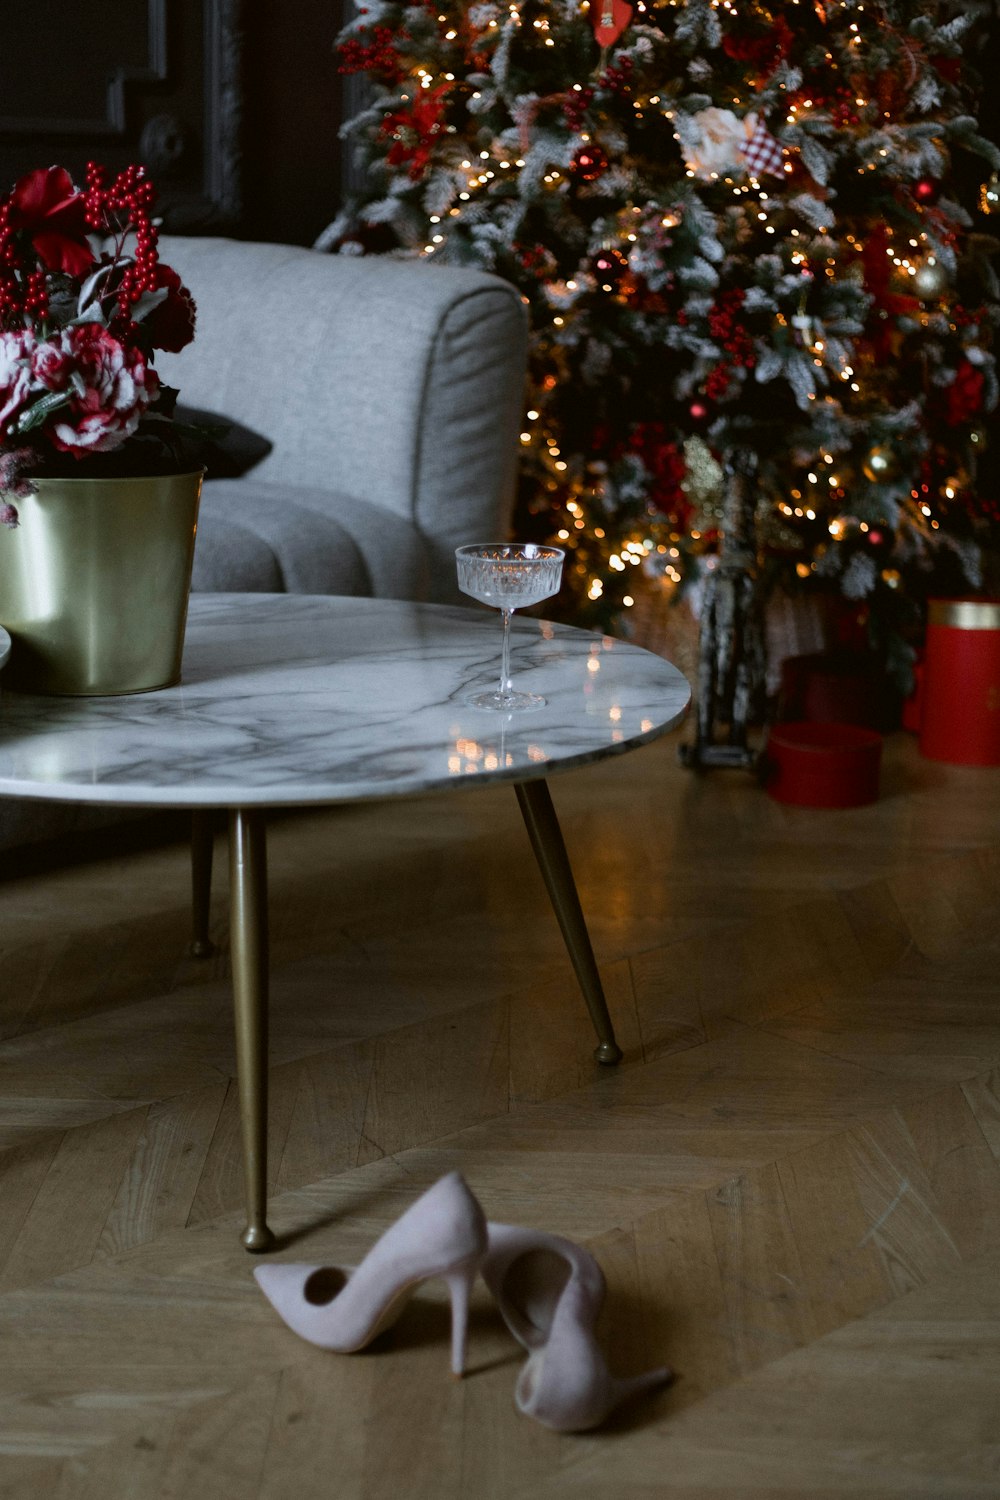 크리스마스 트리 옆 테이블 위에 앉아 있는 흰색 신발 한 켤레